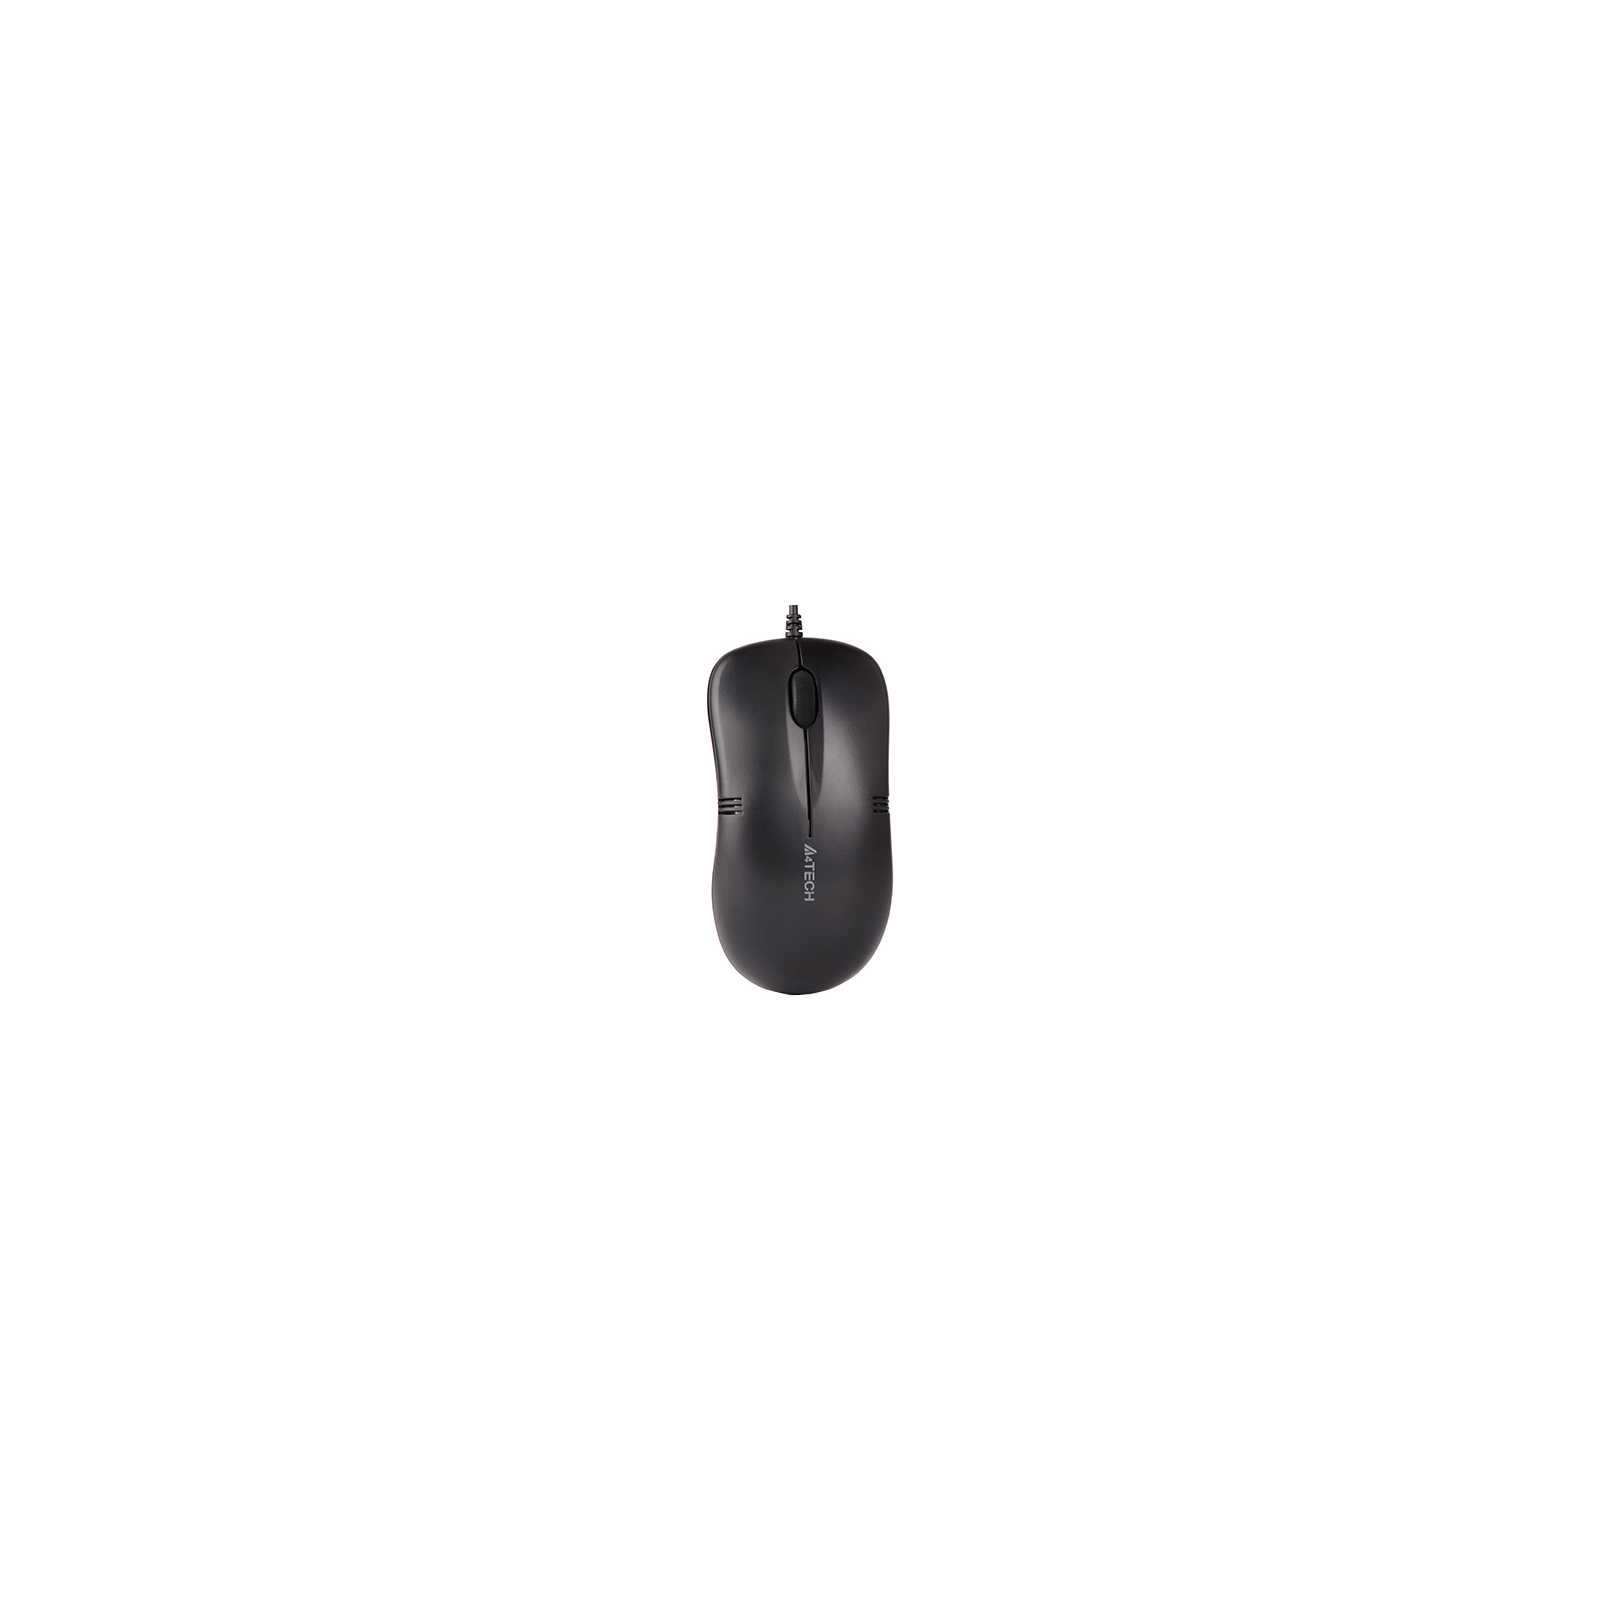 Мышка A4Tech OP-560NUS USB Black